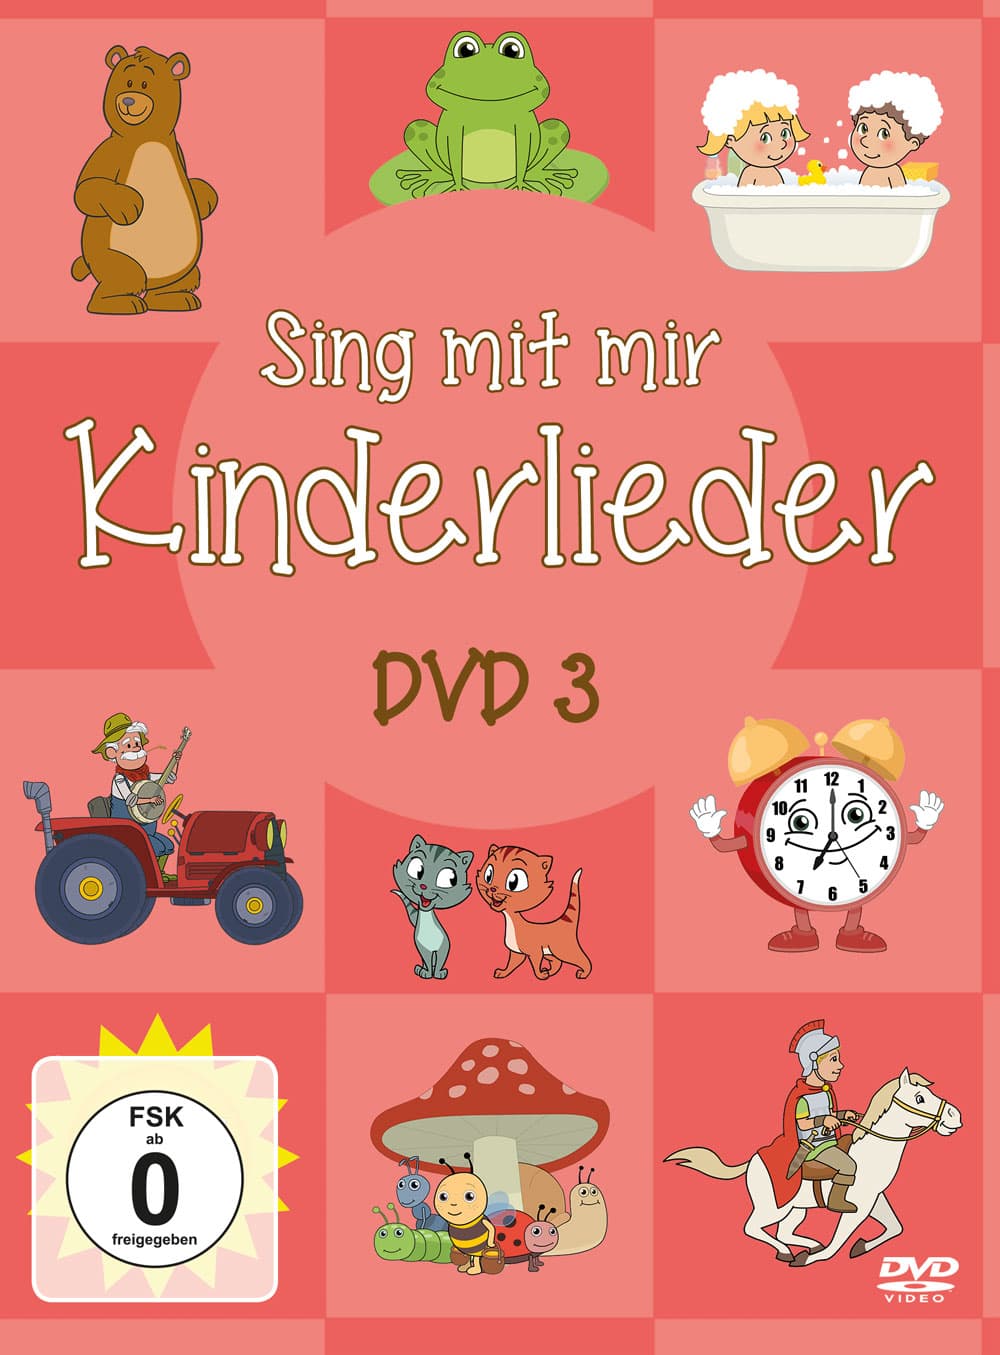 Sing mit mir Kinderlieder - DVD 3